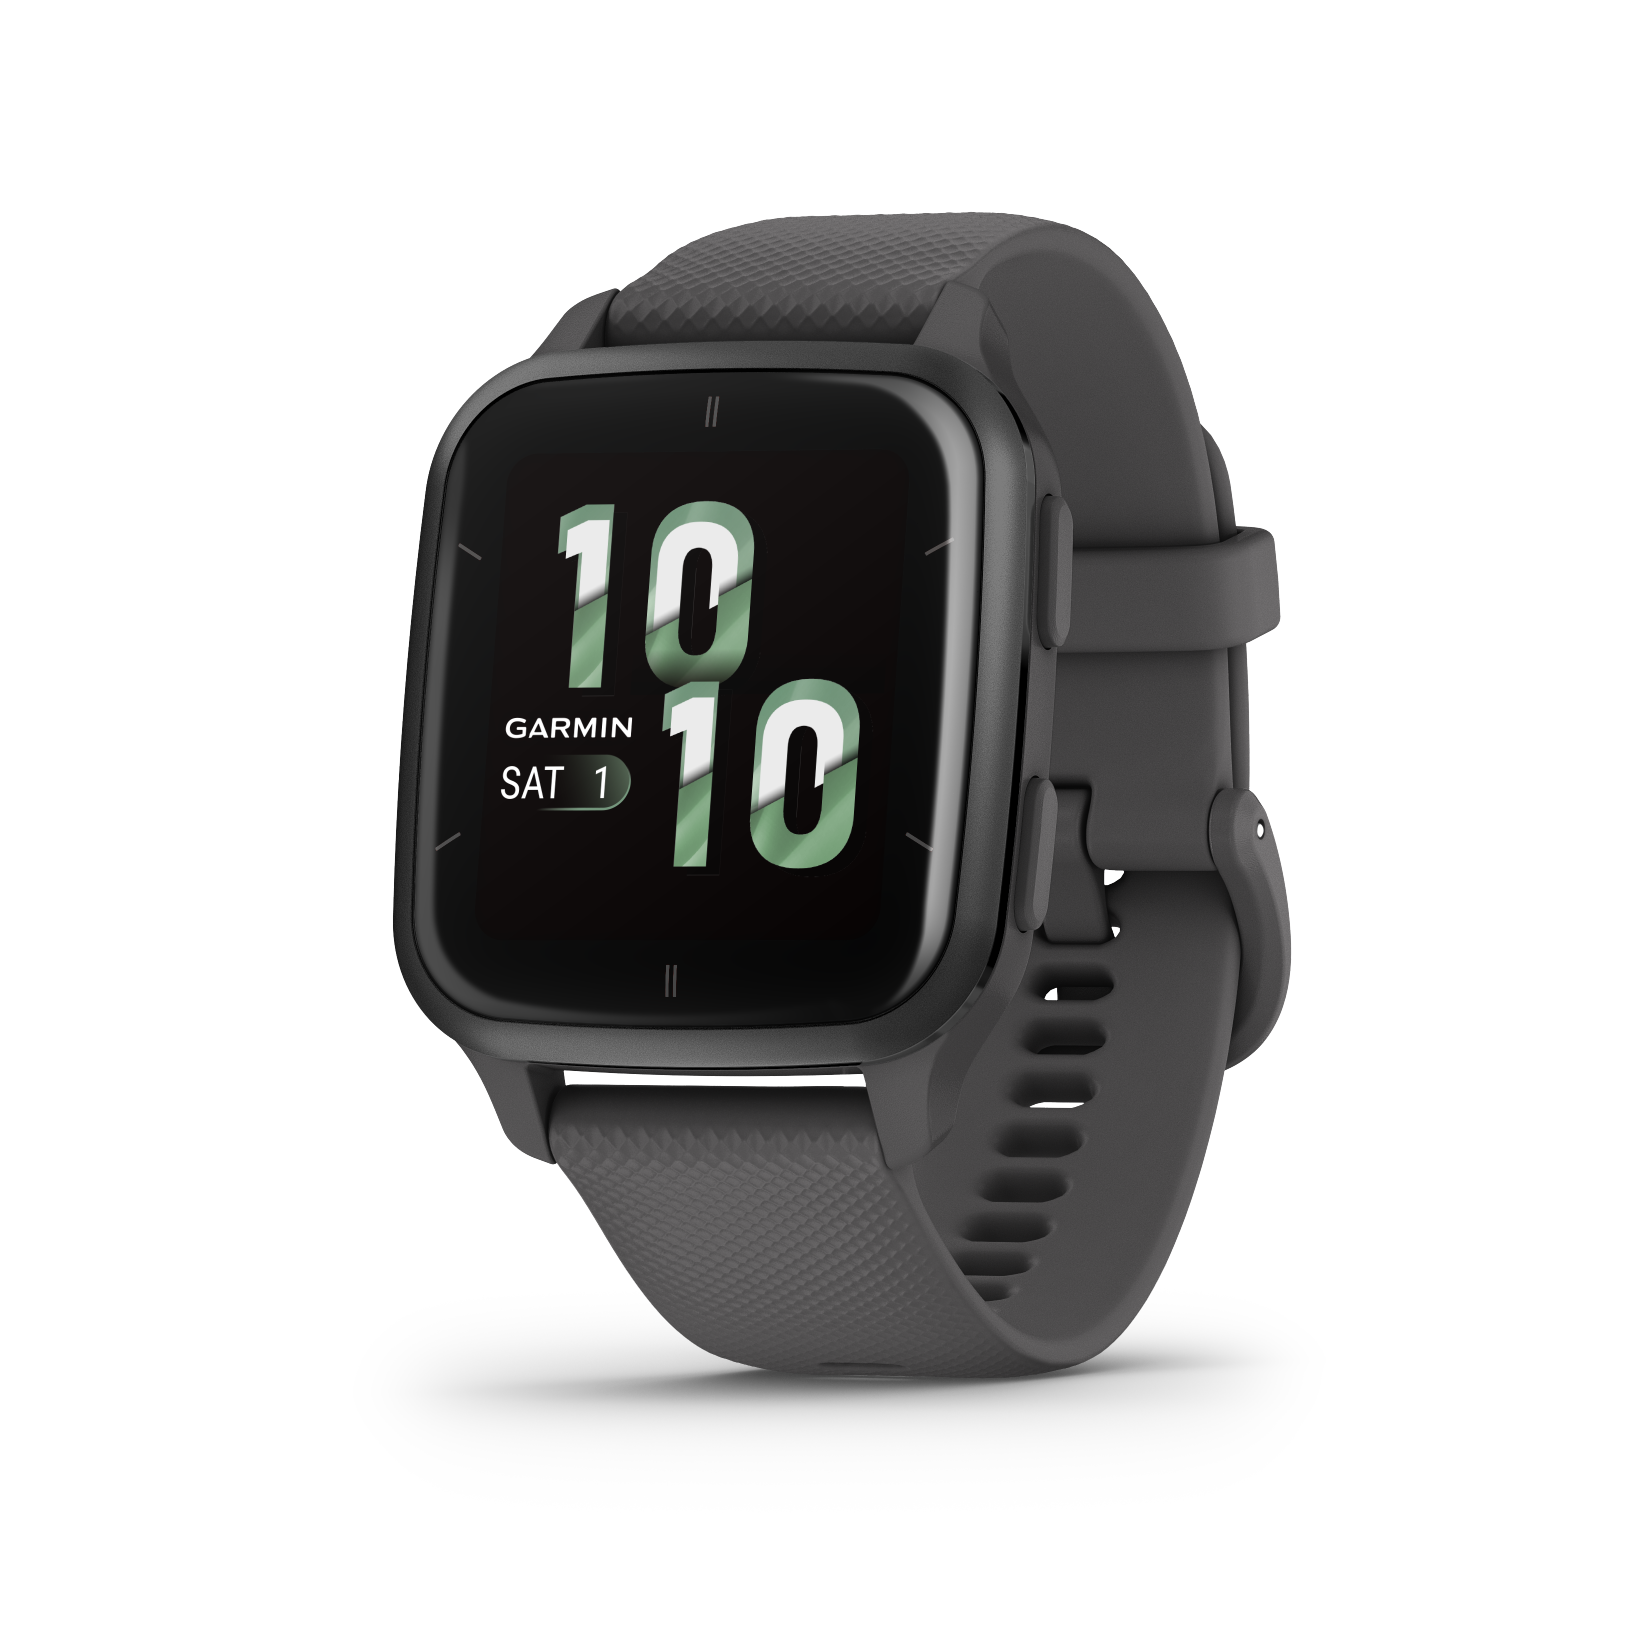 & hochwertig günstig robust Garmin-Smartwatches kaufen: